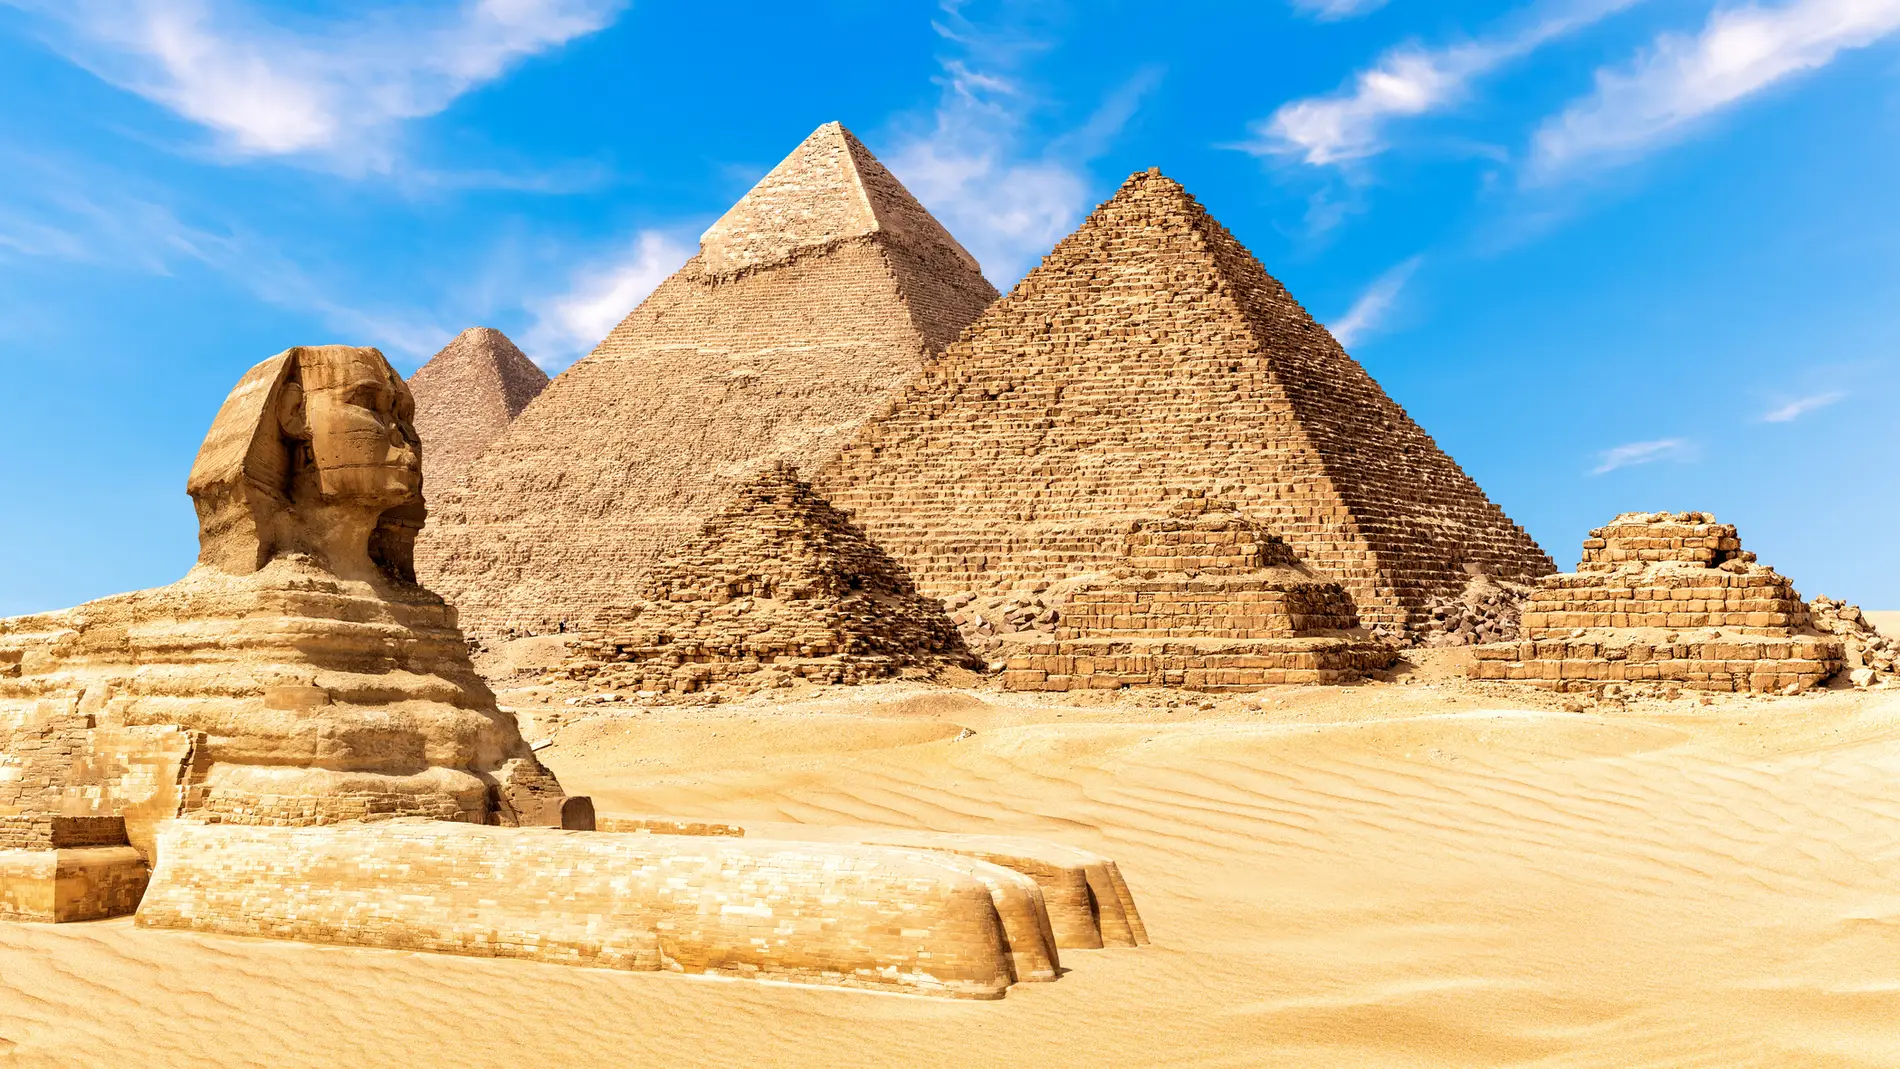 Esfinge y pirámides de Egipto